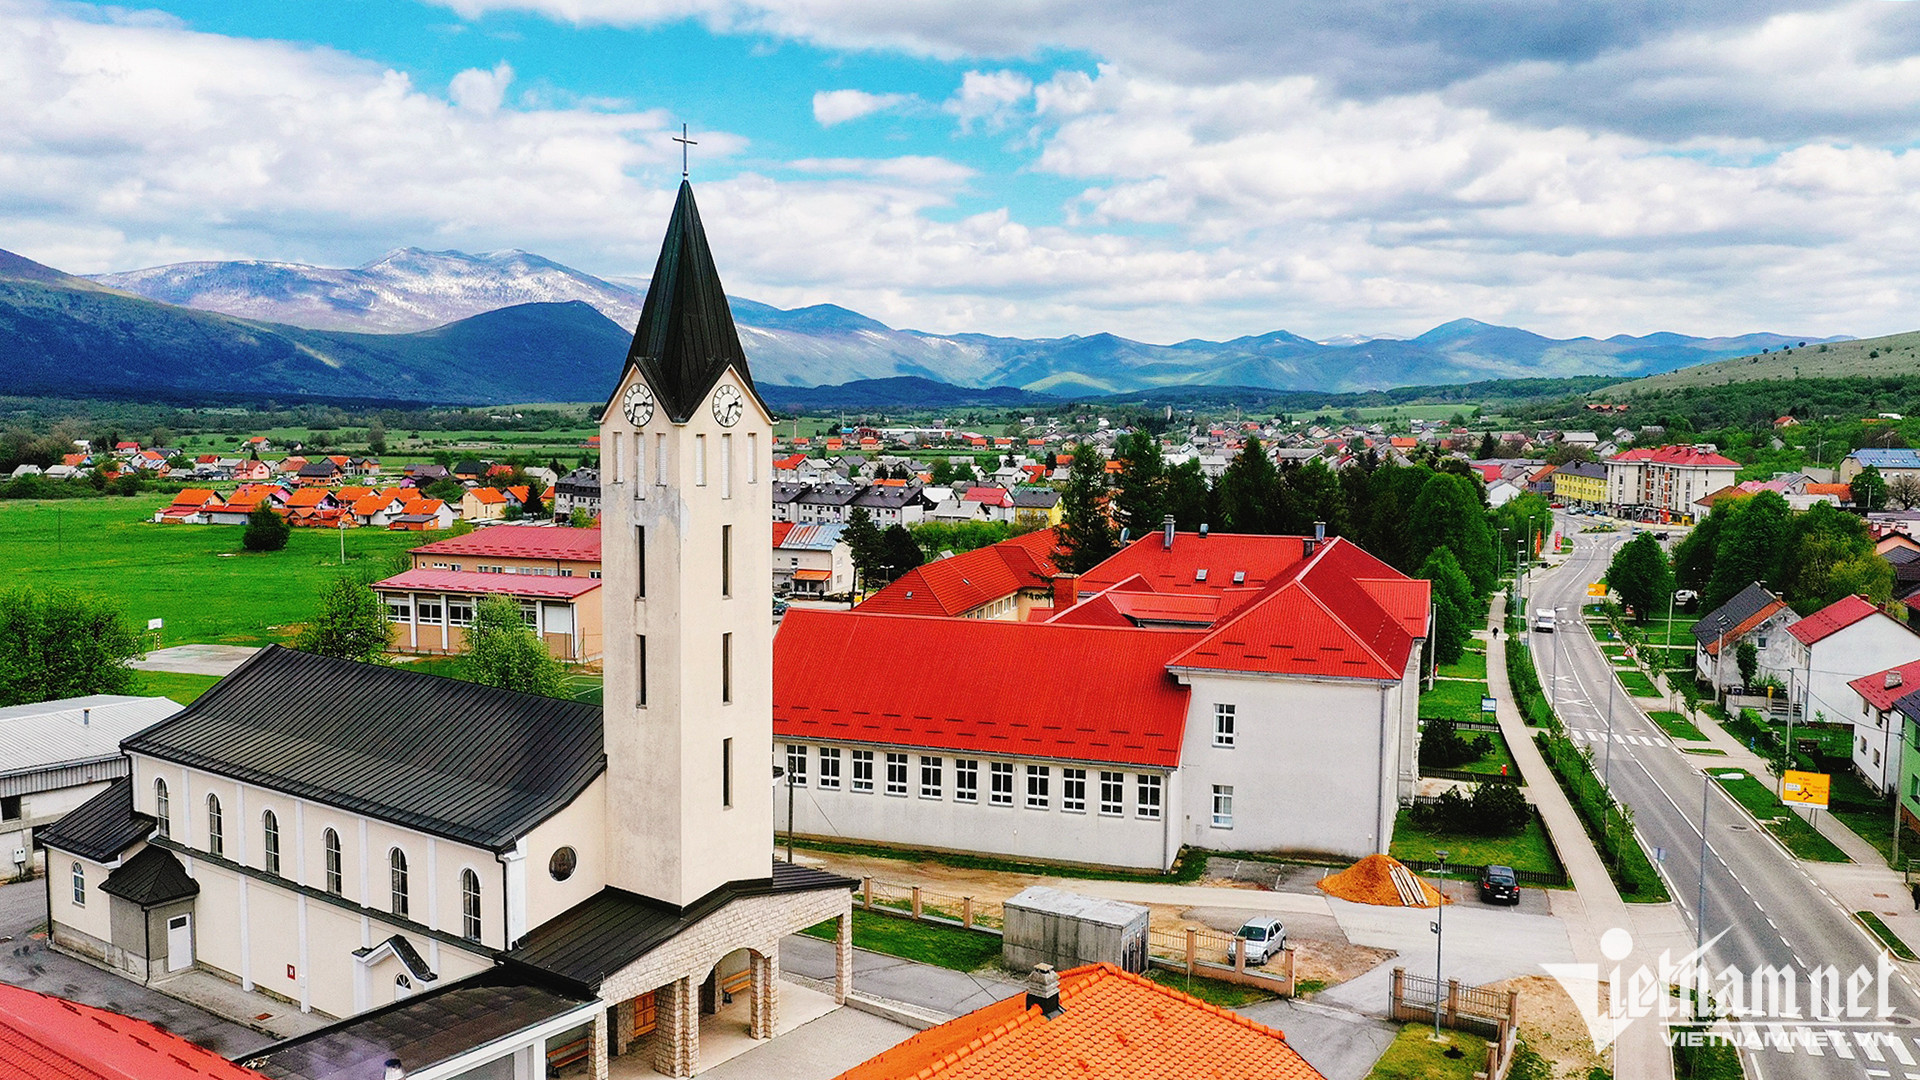 Mê mẩn với cảnh sắc thị trấn cổ Bled ở Slovenia - 4